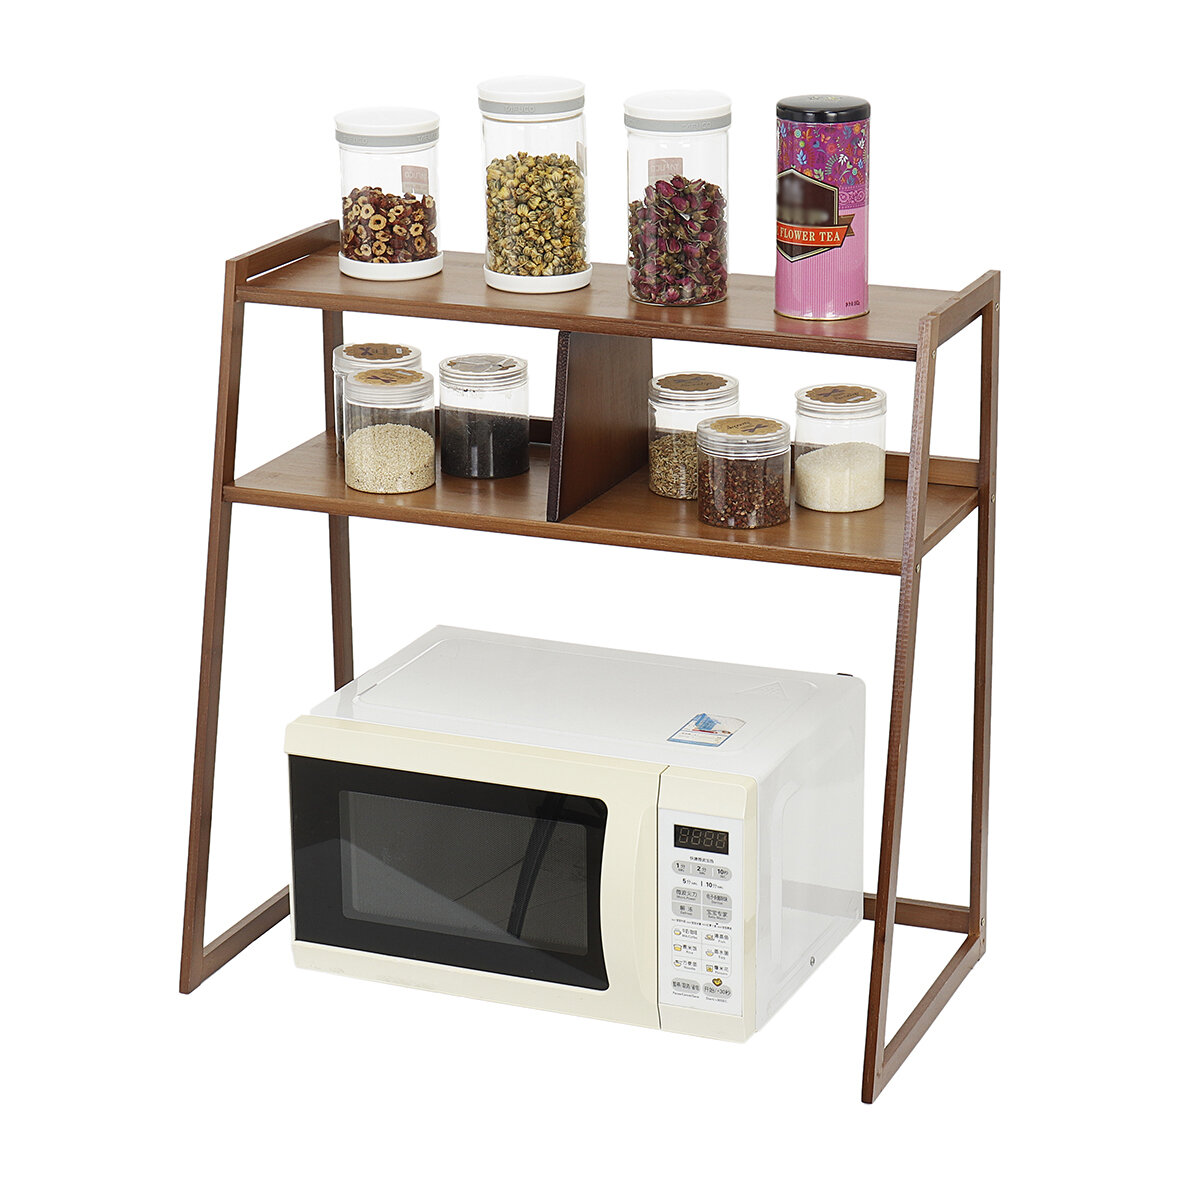 3 Tier Microwave Oven Stand Shelf Storage Rack Organizer Holder Cabinet Kitchen Tool